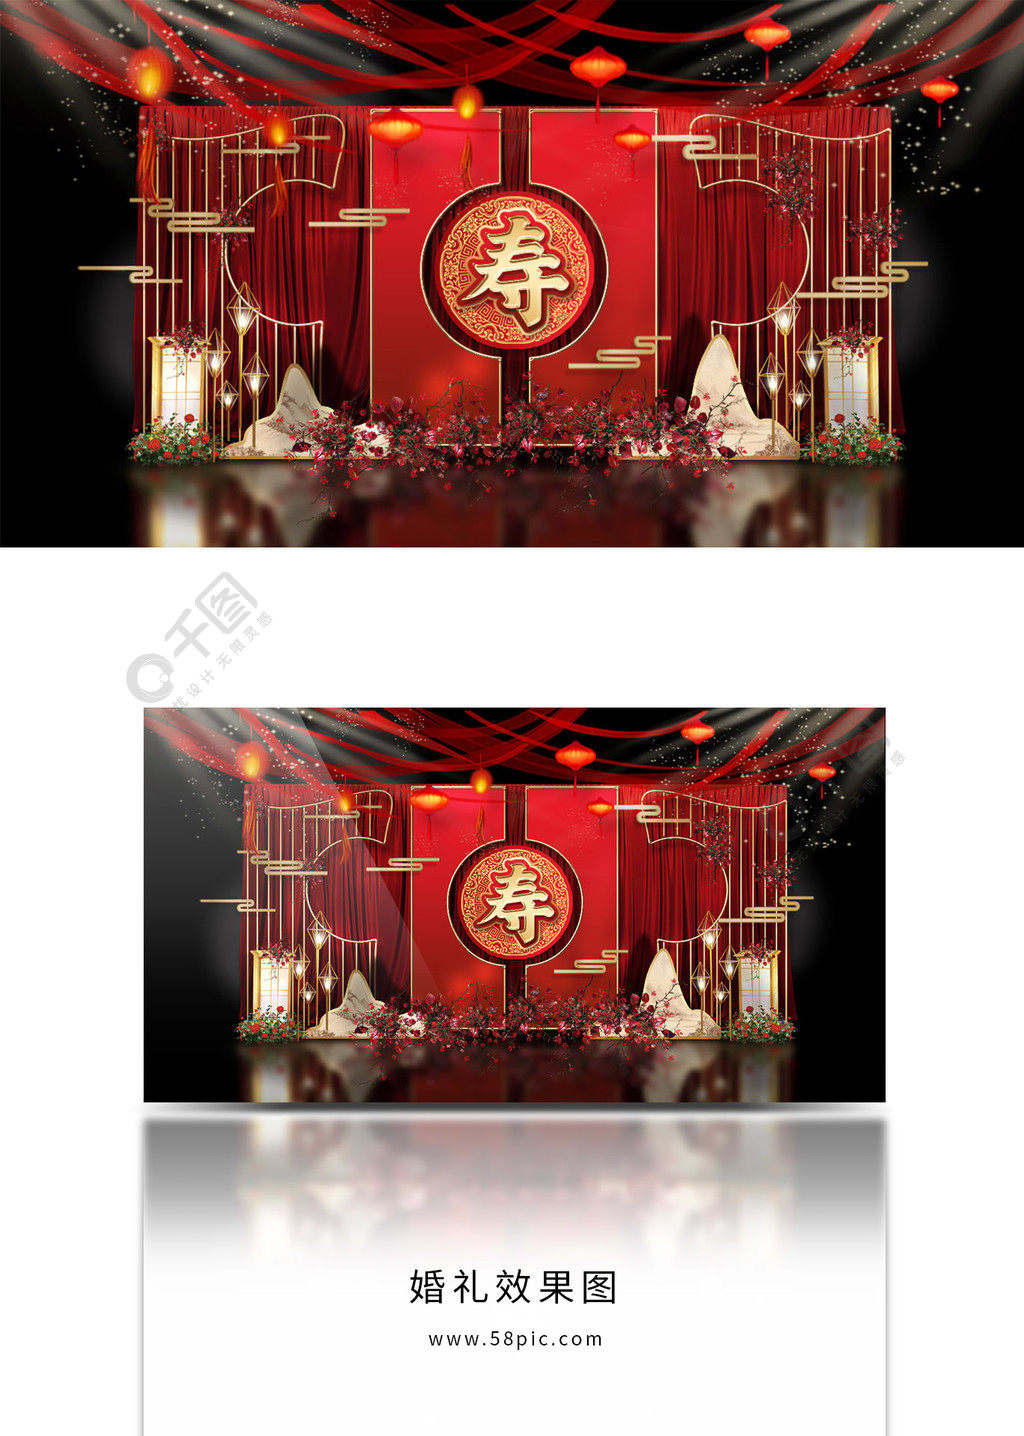 原创红色喜庆中国风寿宴场景婚礼效果图设计图免费